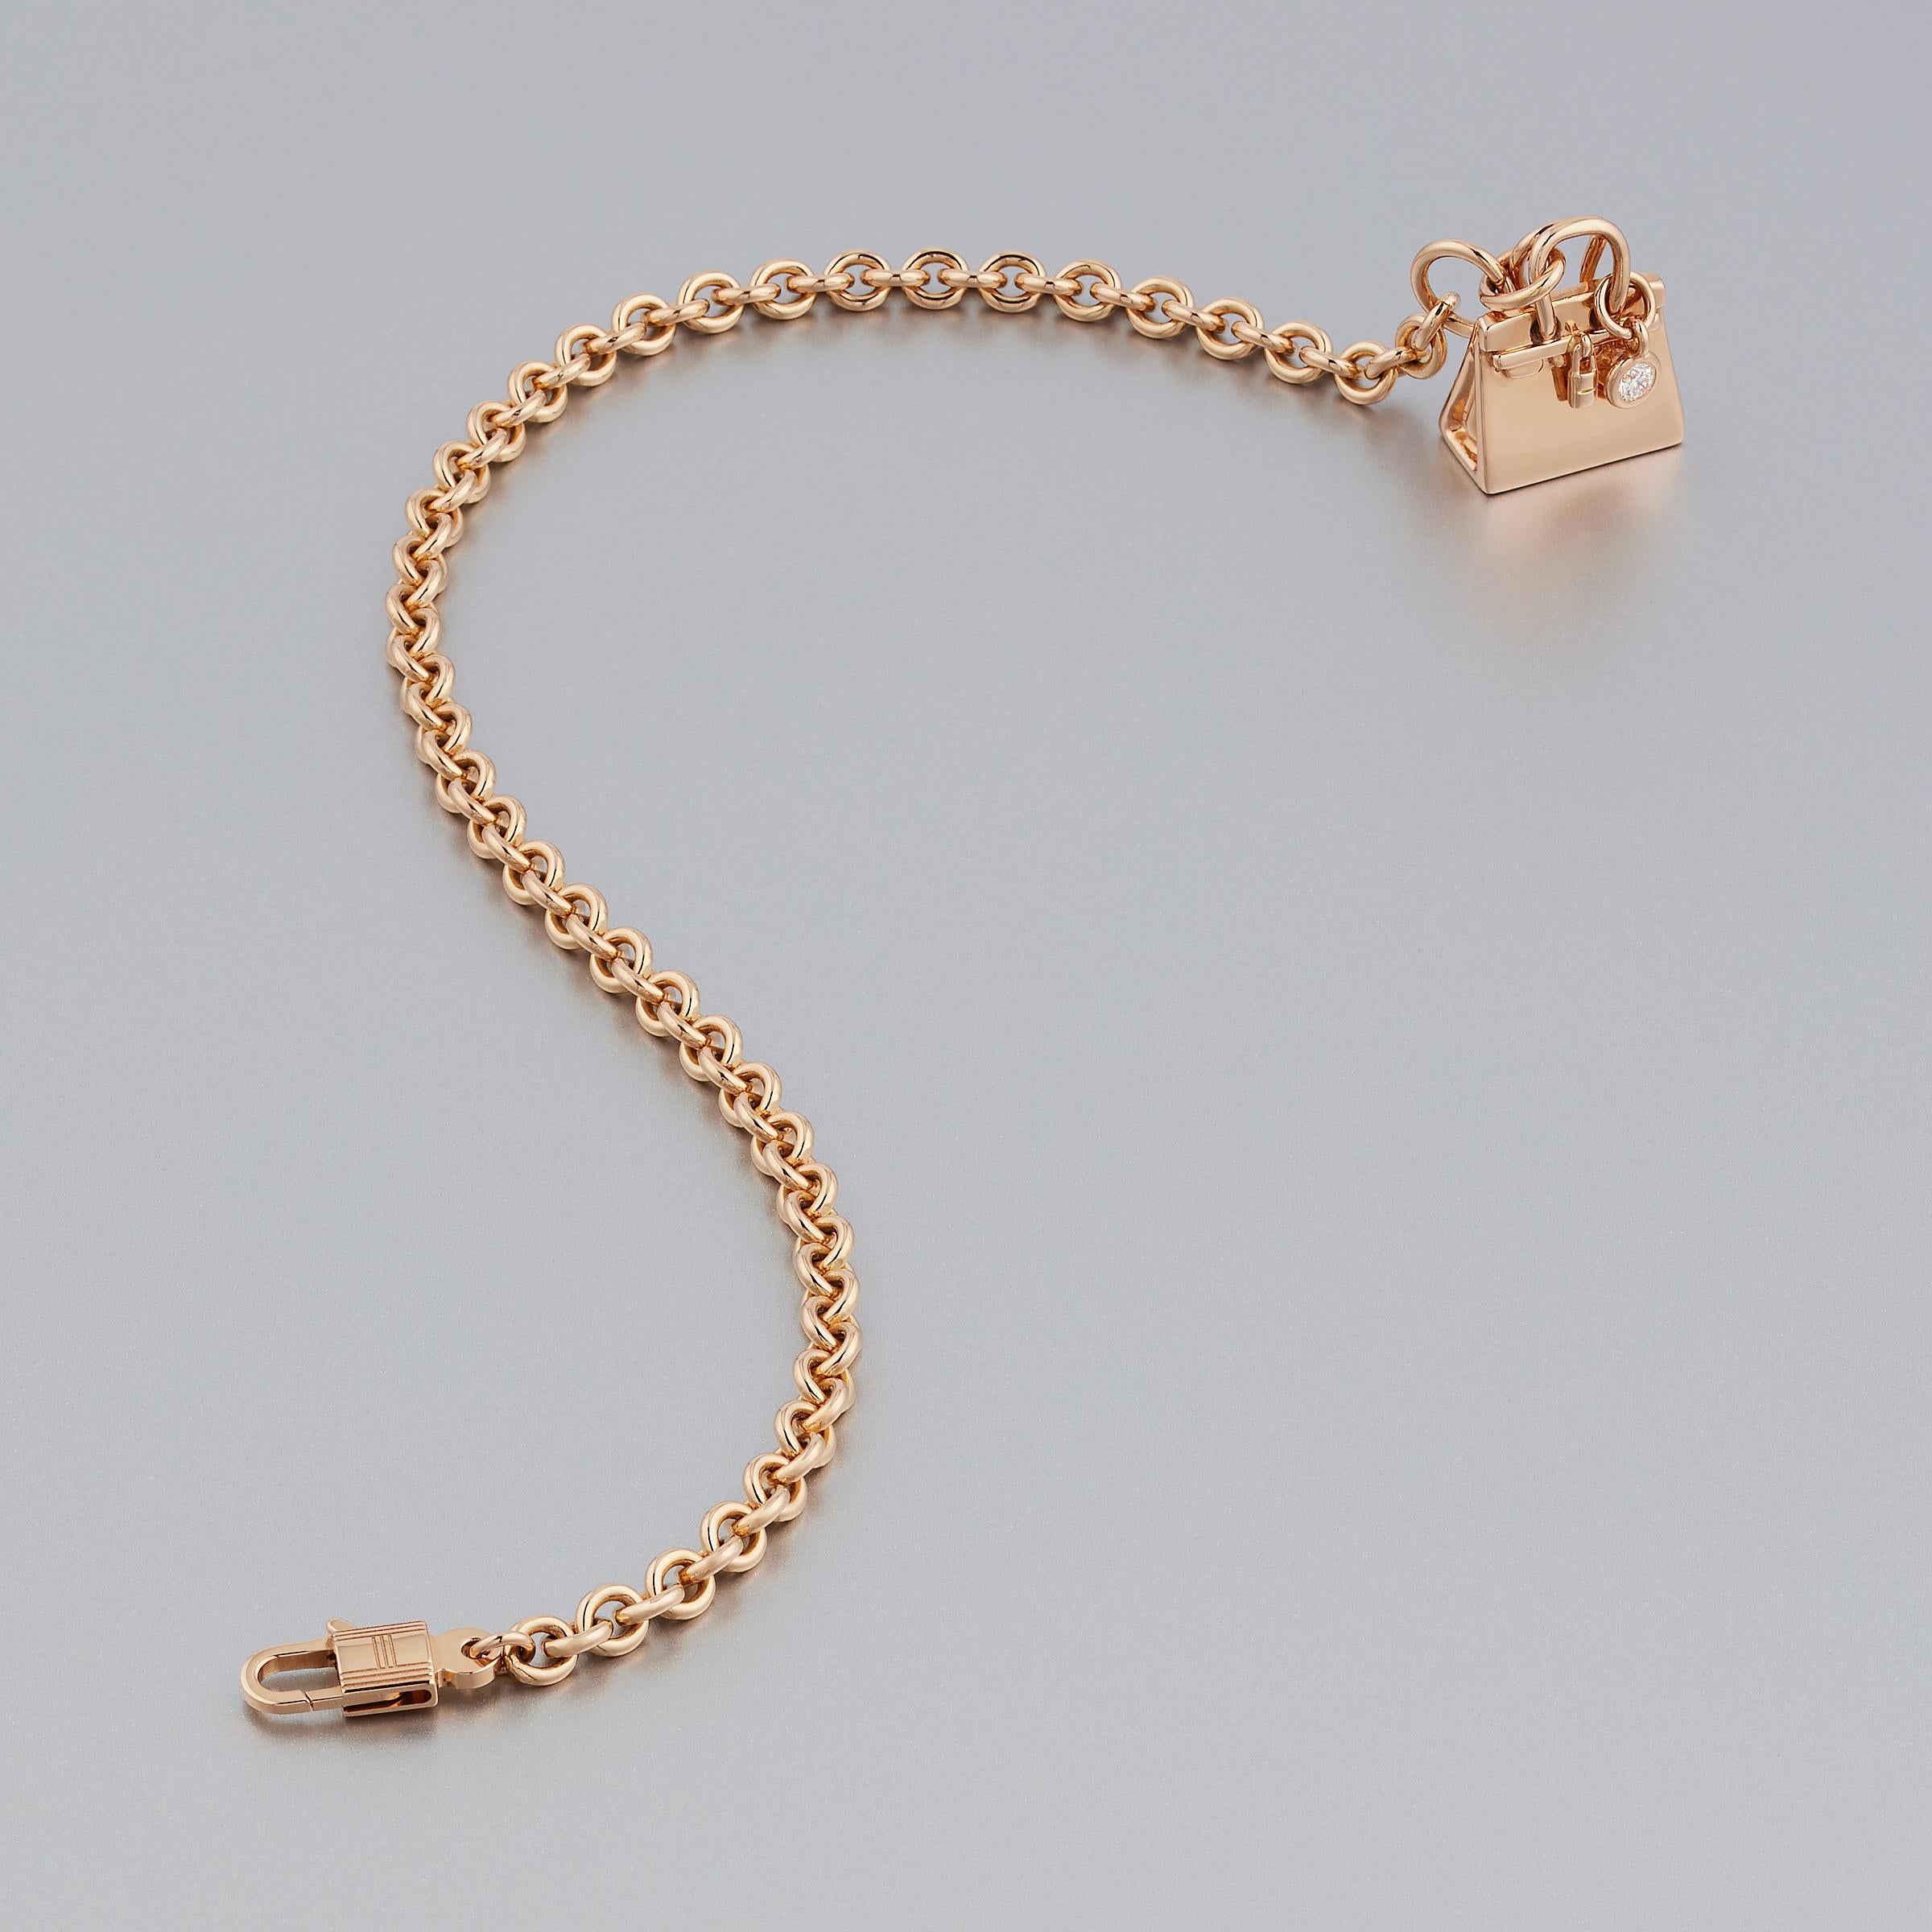 Bracelet élégant Hermès Birkin Amulette en or 18 carats, serti de diamants. Ce délicat bracelet à chaîne fait partie de la collection populaire d'Amulettes Hermes et comporte une charmante breloque en forme de sac Birks. Le bracelet brille de